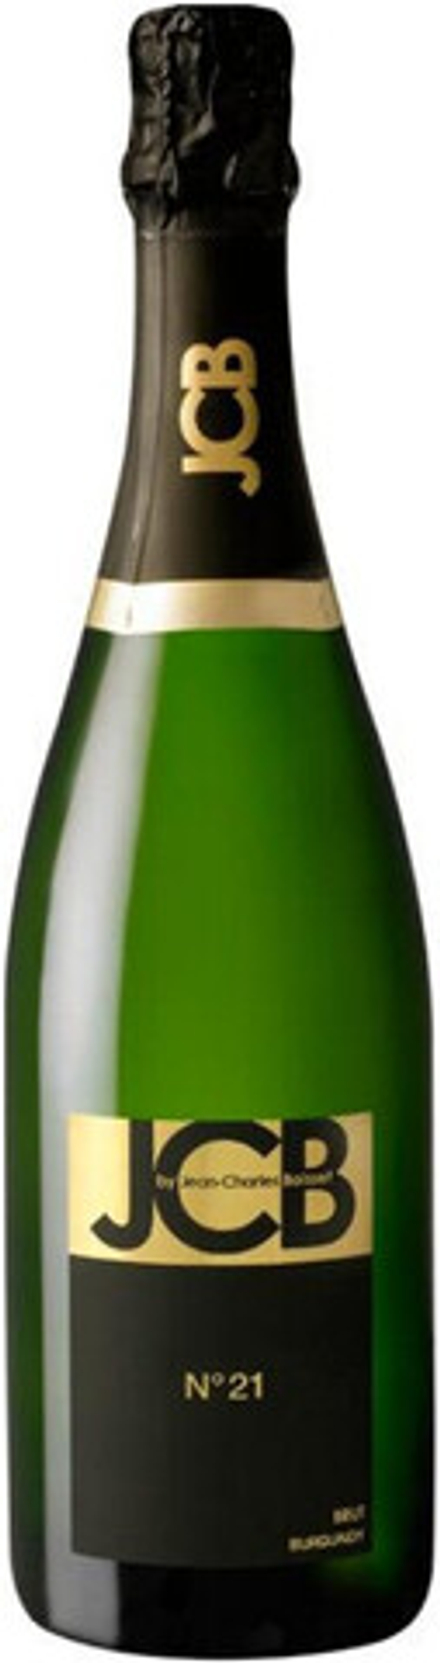 Игристое вино Cremant de Bourgogne JCB №21 Brut, 0,75 л.